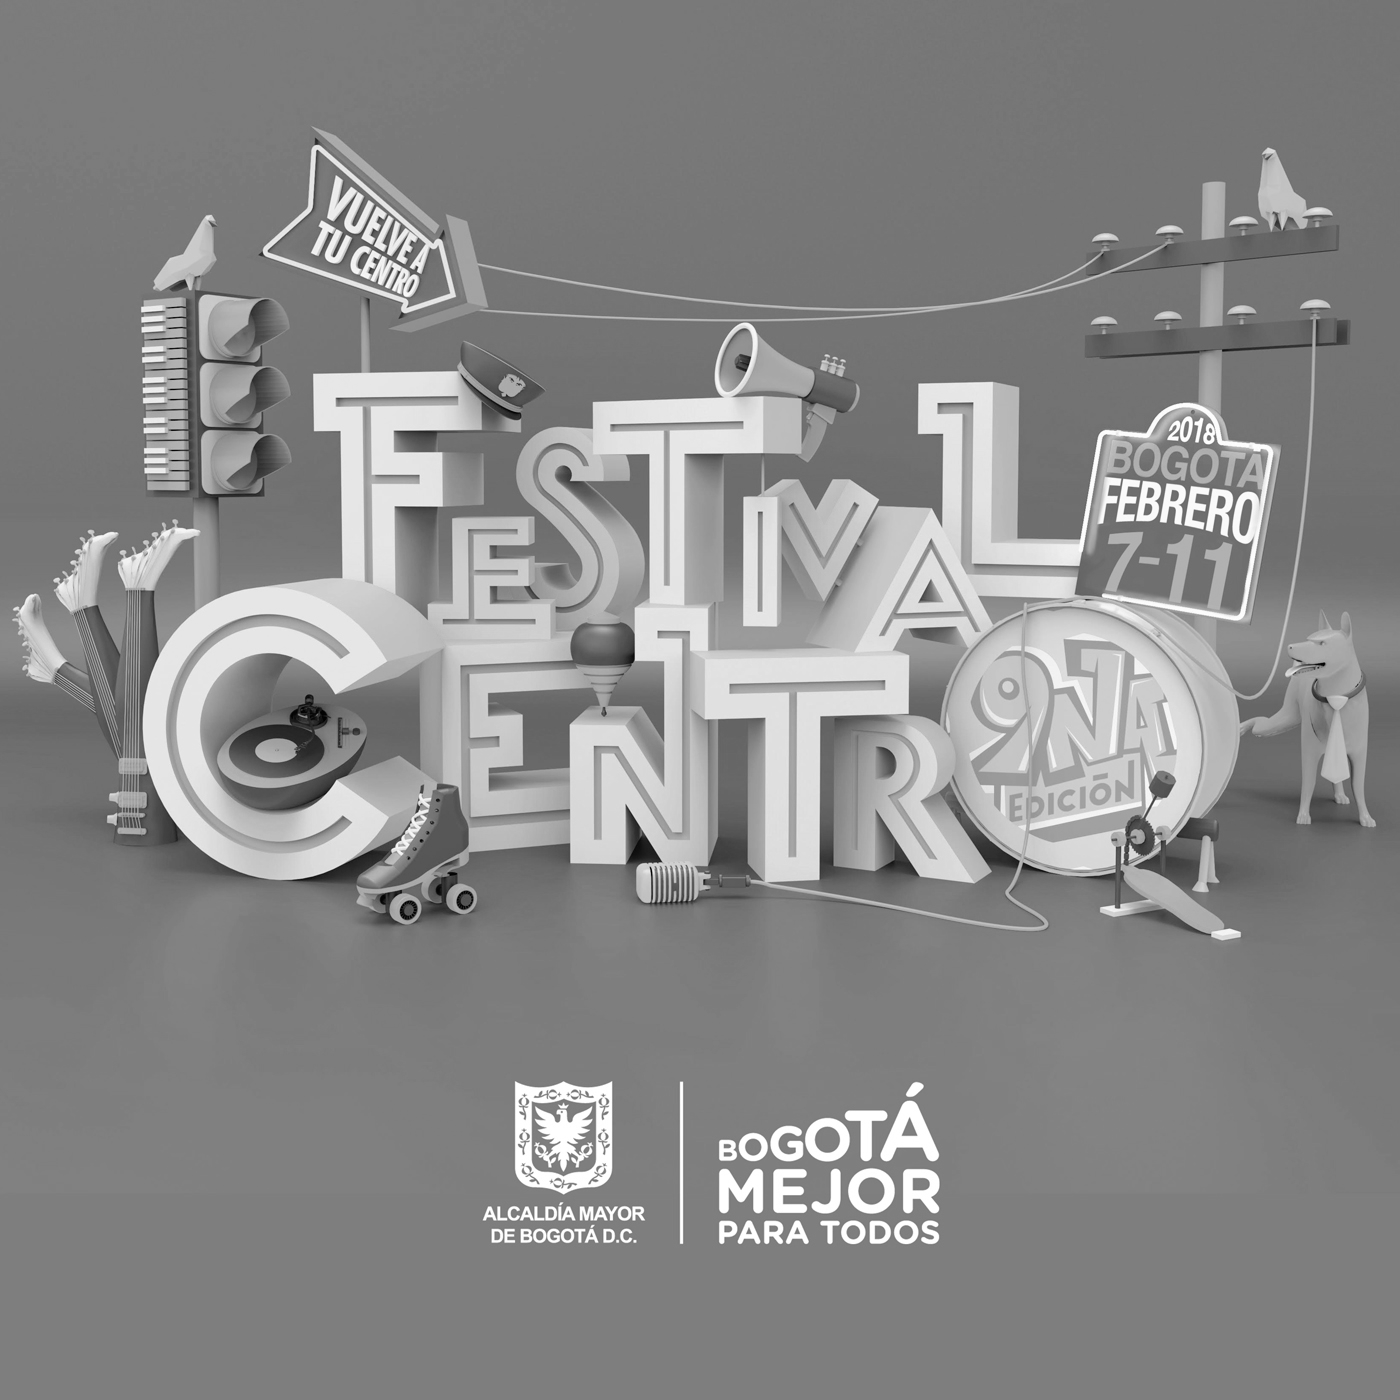 Ya llega el Festival Centro 2018